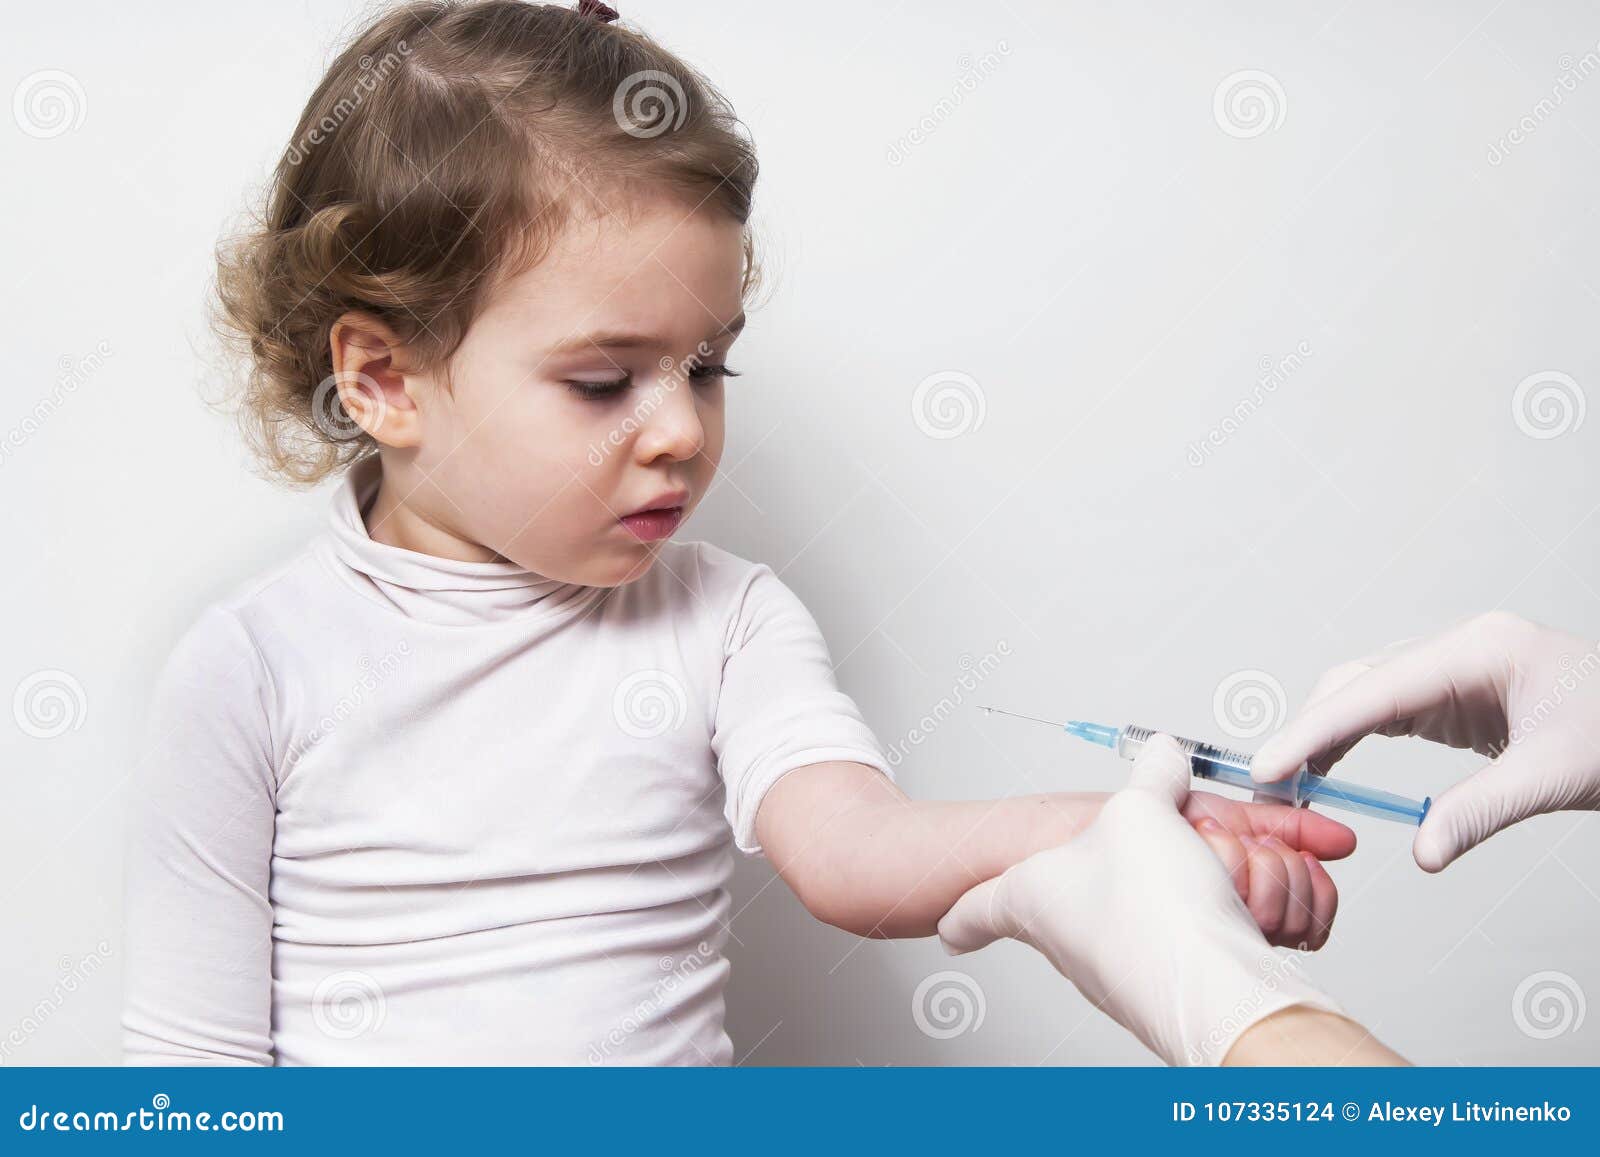 Включи где девочке делали укол. Шприц для детей. Детский шприц для прививок. Уколы и прививки. Девочка со шприцом прививка.